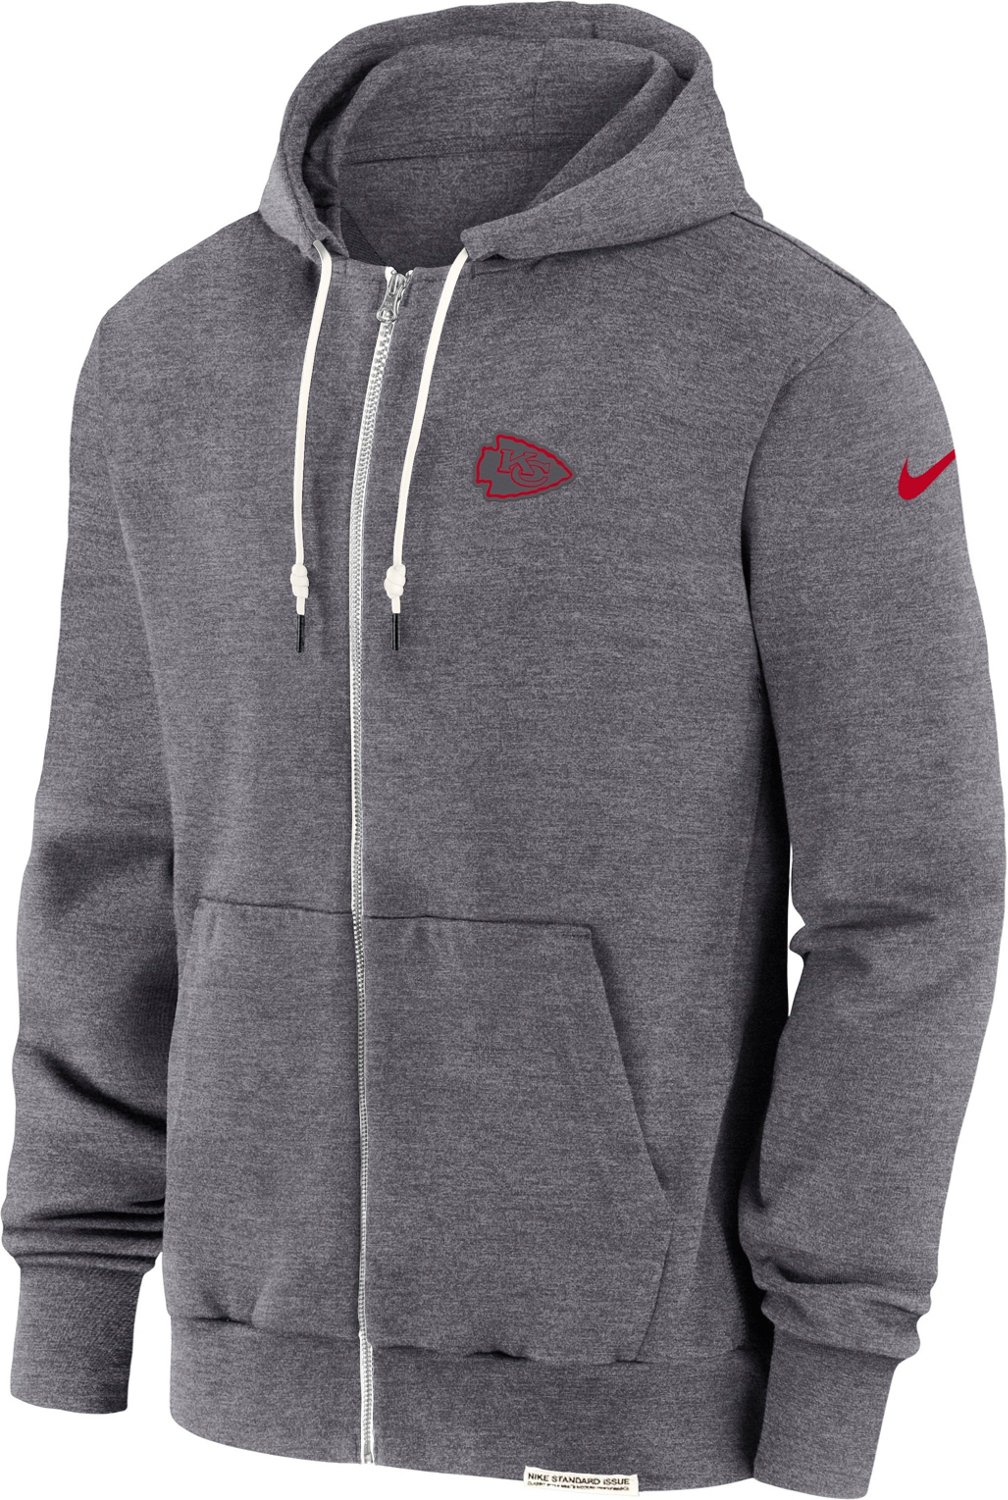 Nike Men's Kansas City Chiefs Dri-FIT Full Zip Hoodie T-shirt                                                                    - view number 1 selected